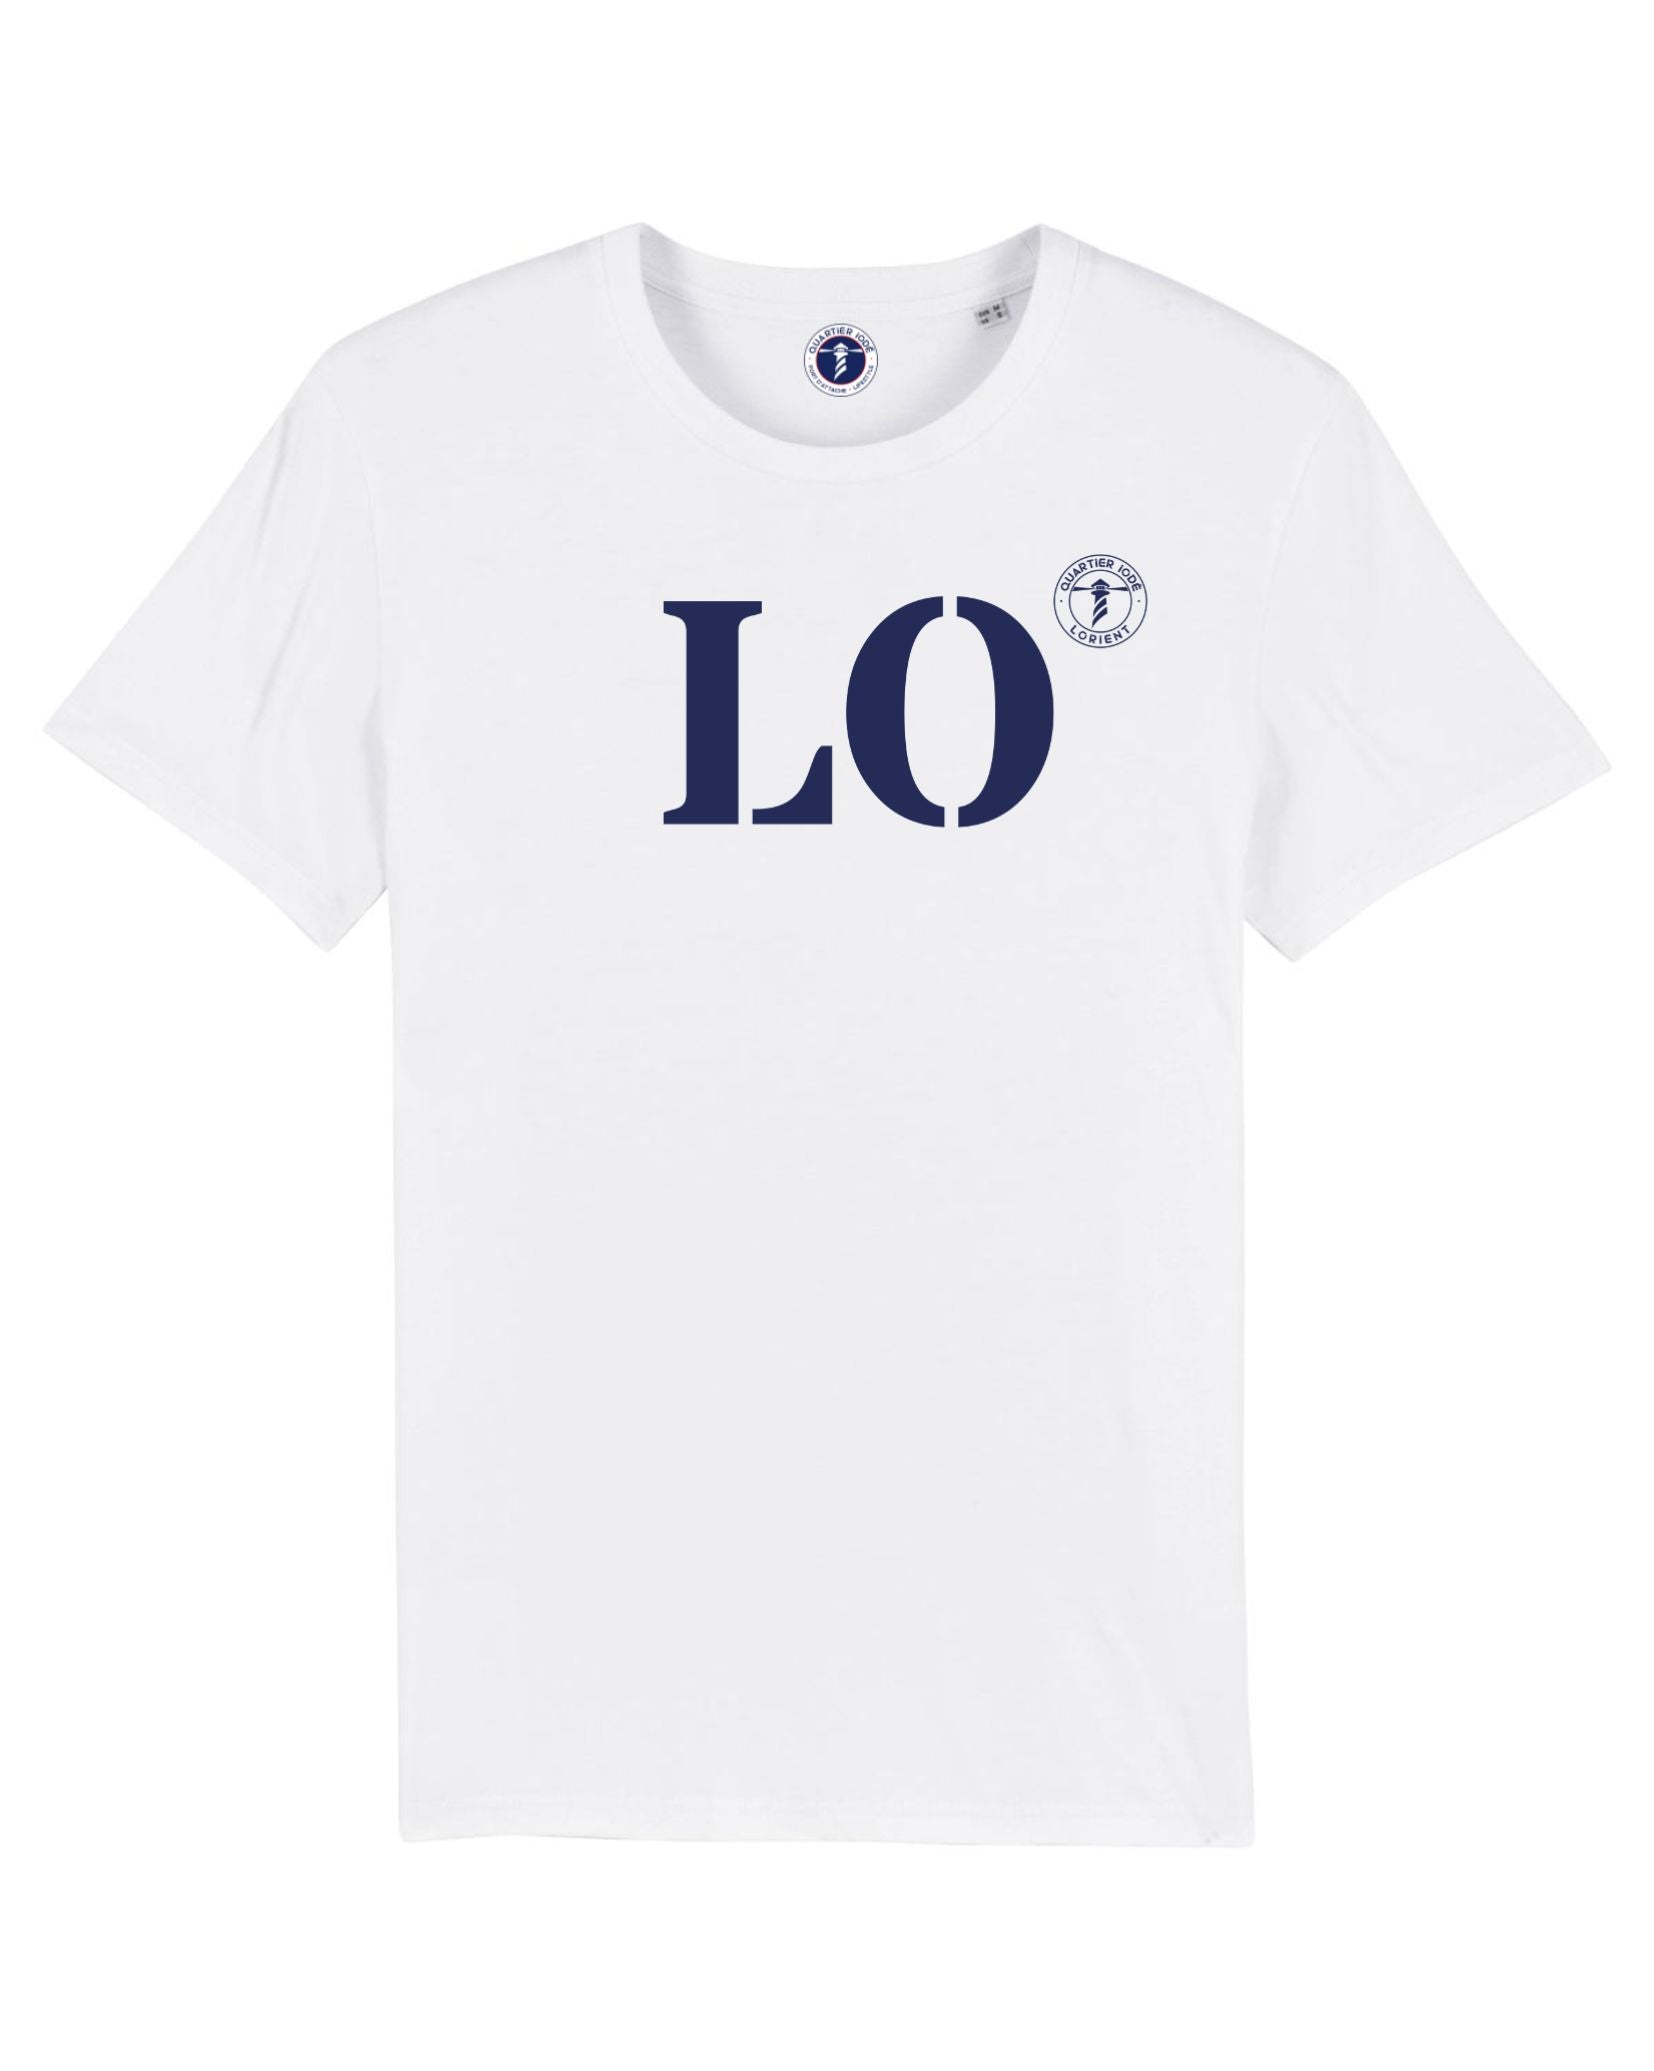 Tshirt LO pour Lorient, par Quartier Iodé, en coton blanc et biologique. Inscription bleue, pour homme et femme.